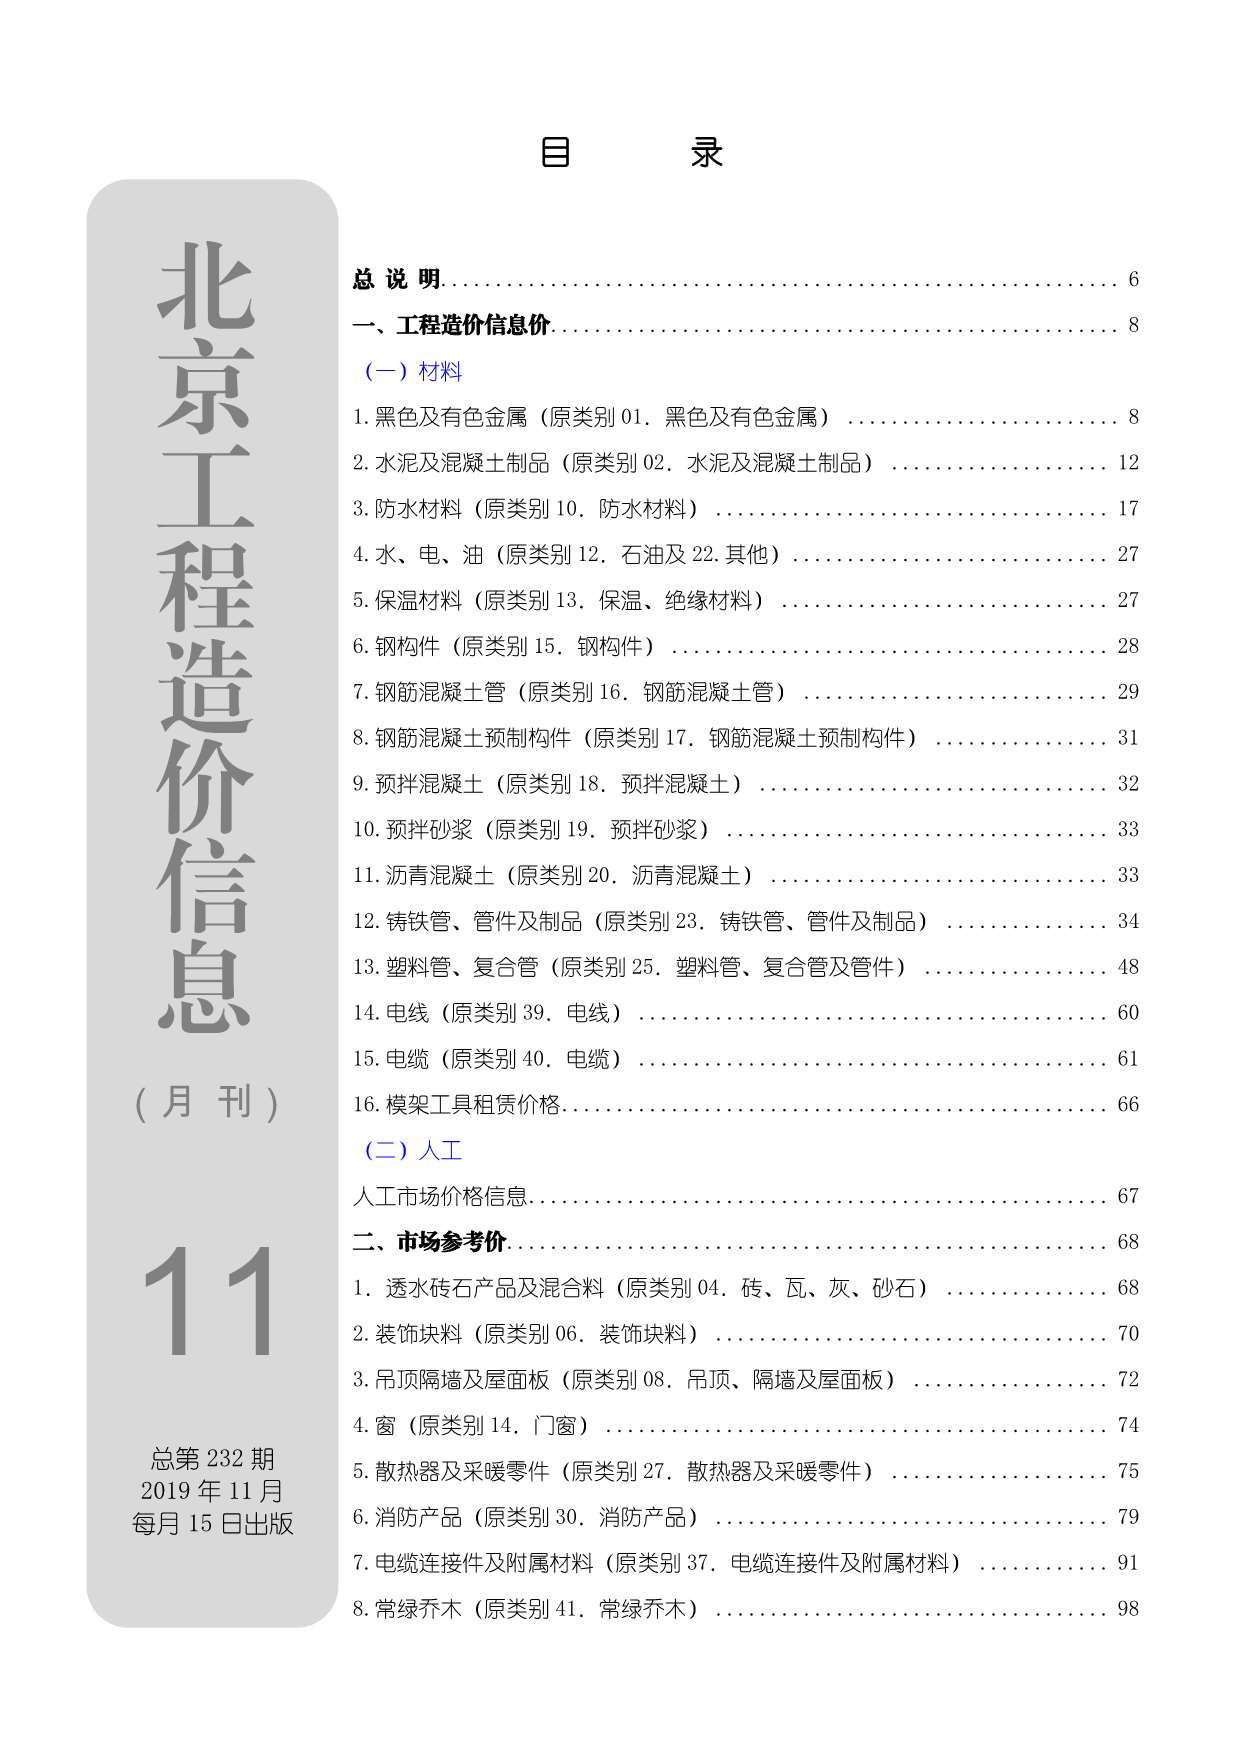 北京市2019年11月工程信息价_北京市信息价期刊PDF扫描件电子版